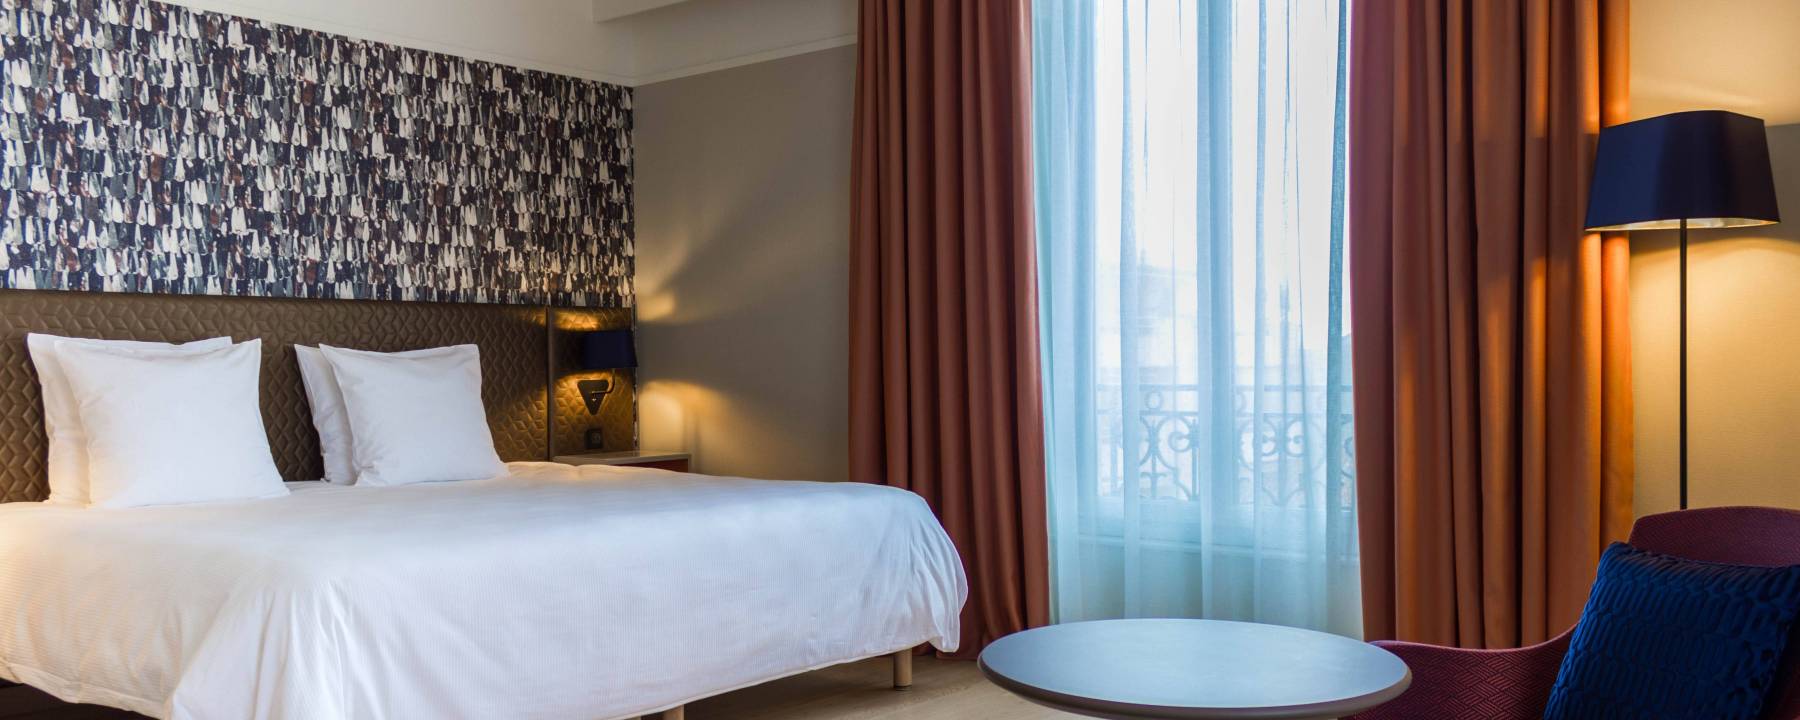 Recrutement: Femme de chambre / Valet de chambre W/M chez Oceania Hotels à Montpellier